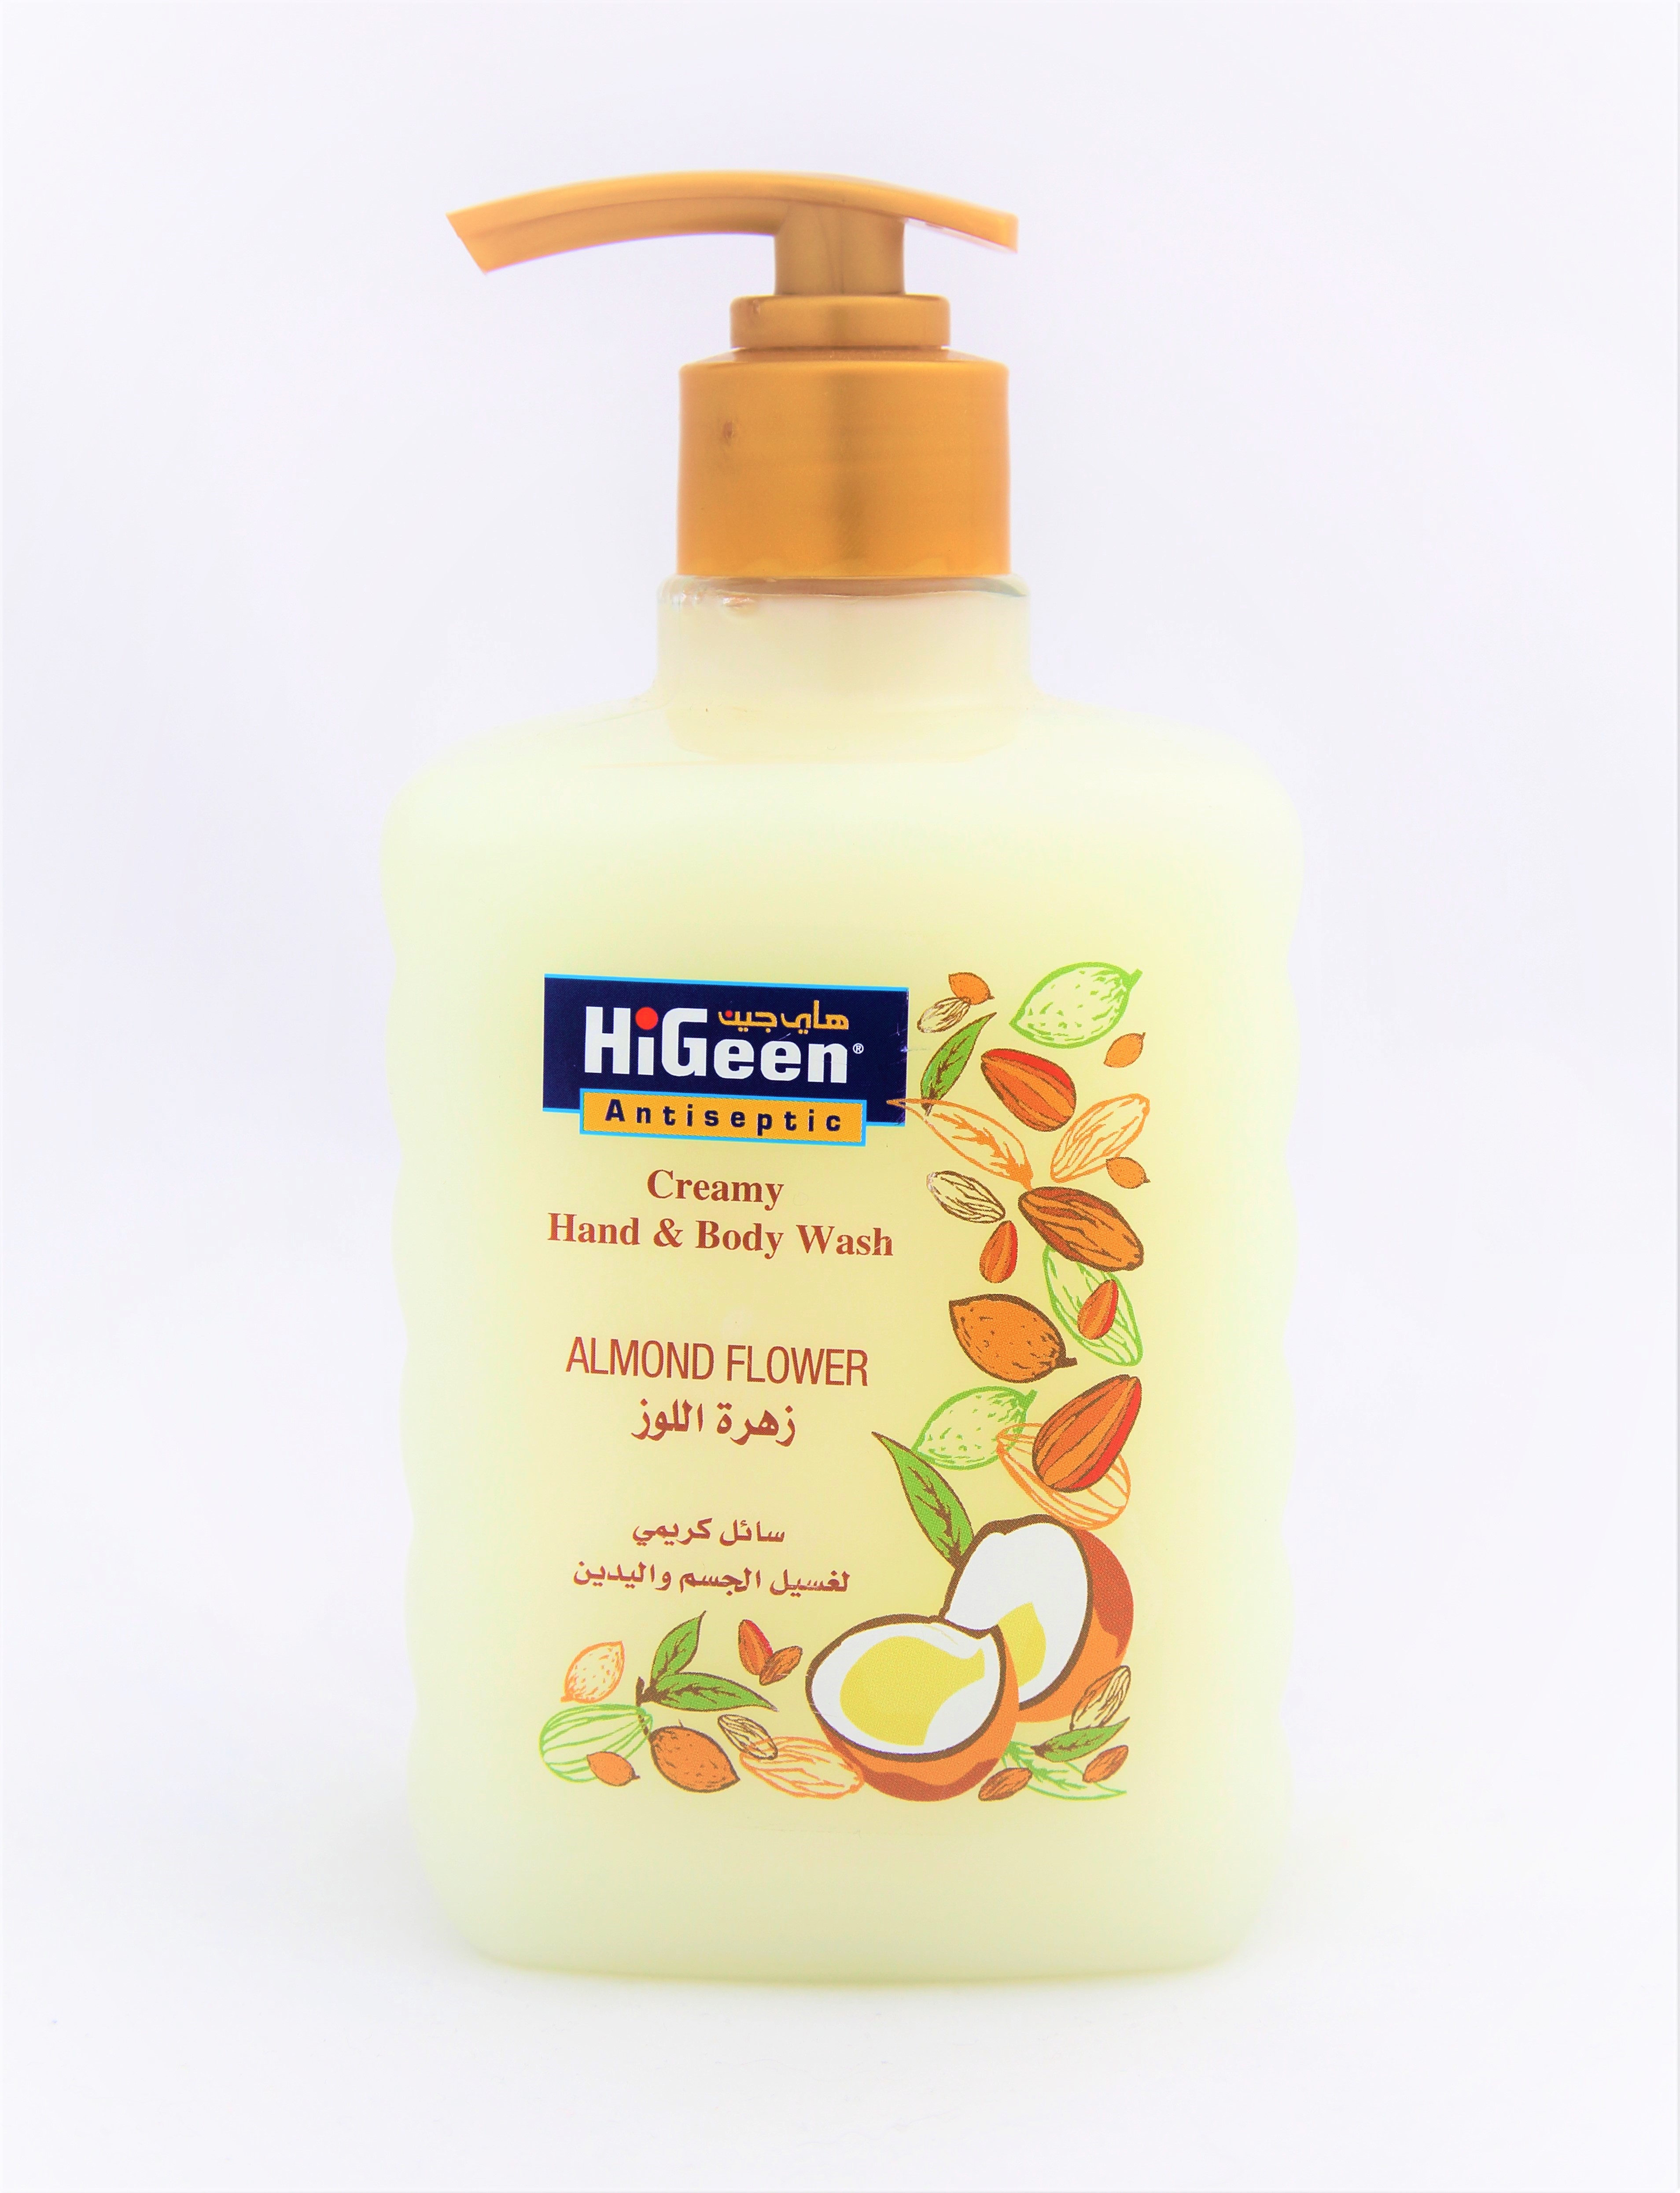 HiGeen Creamy Hand & Body Wash Almond Flower 